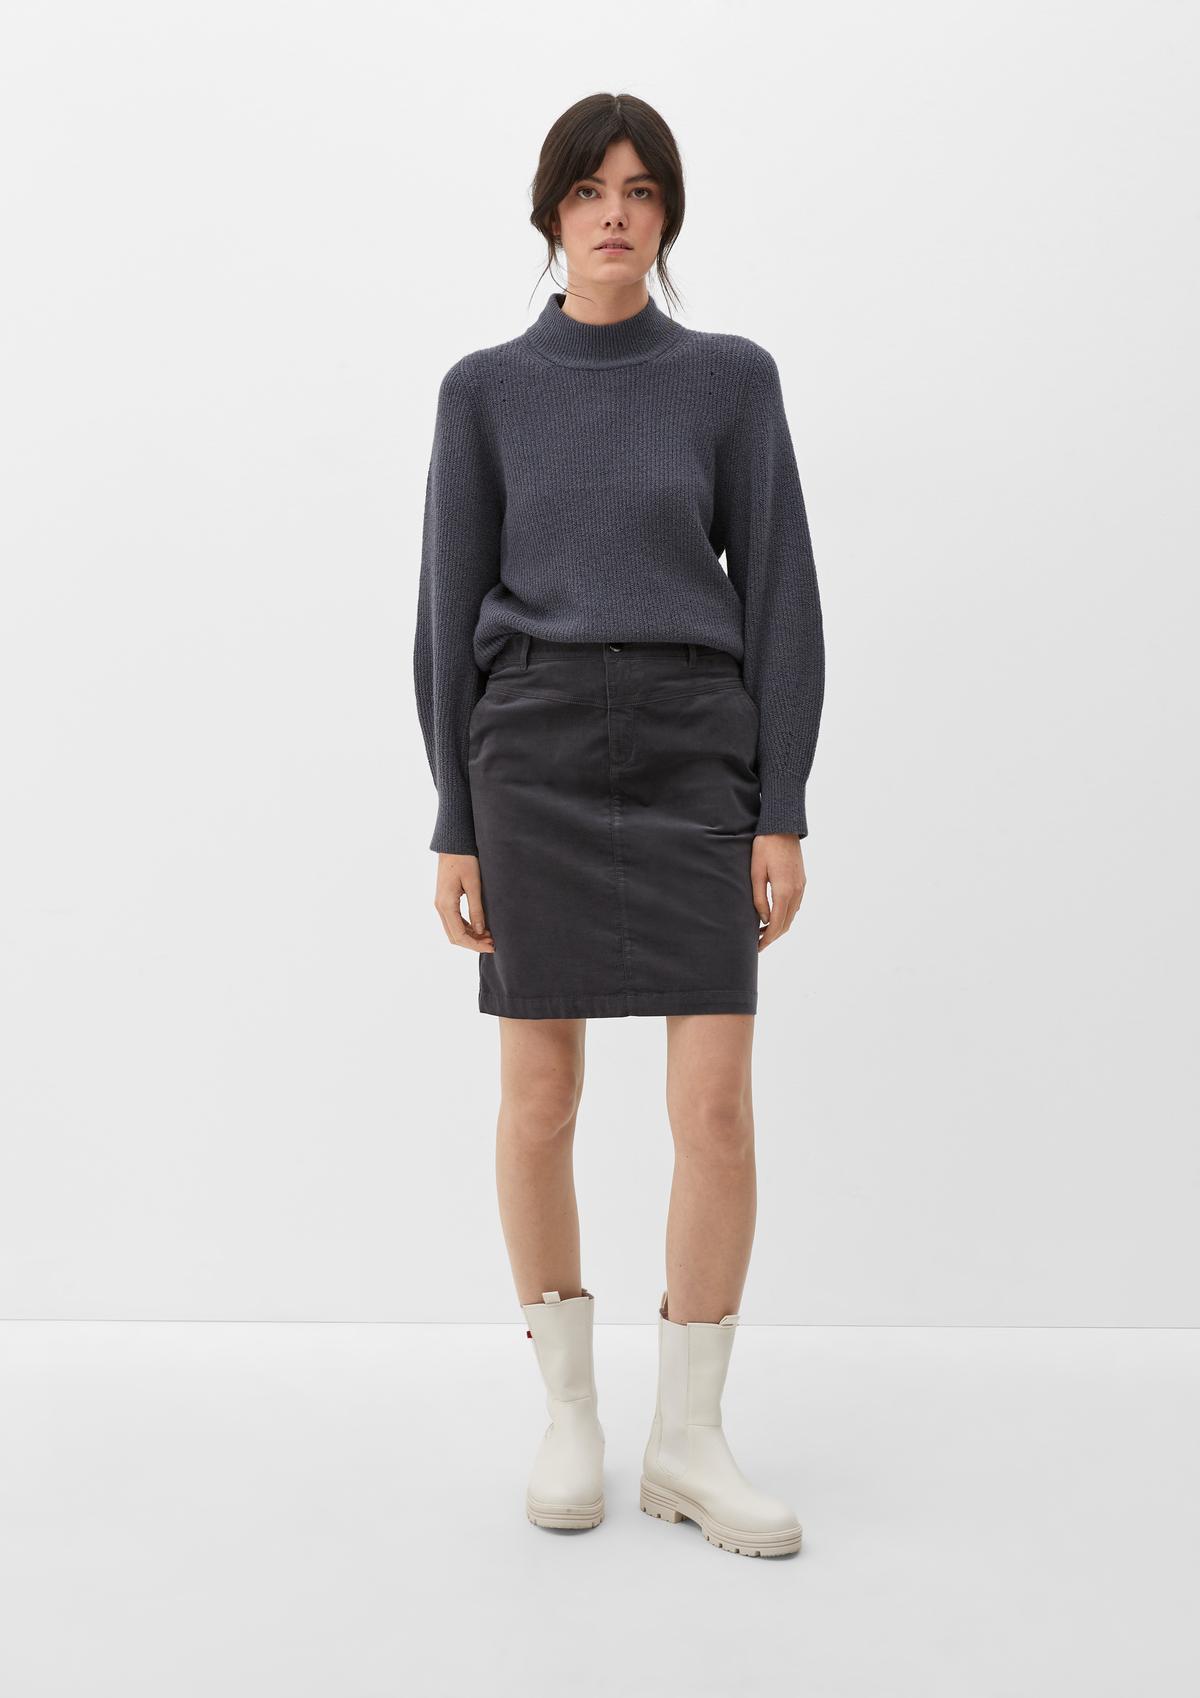 s.Oliver Short needlecord skirt